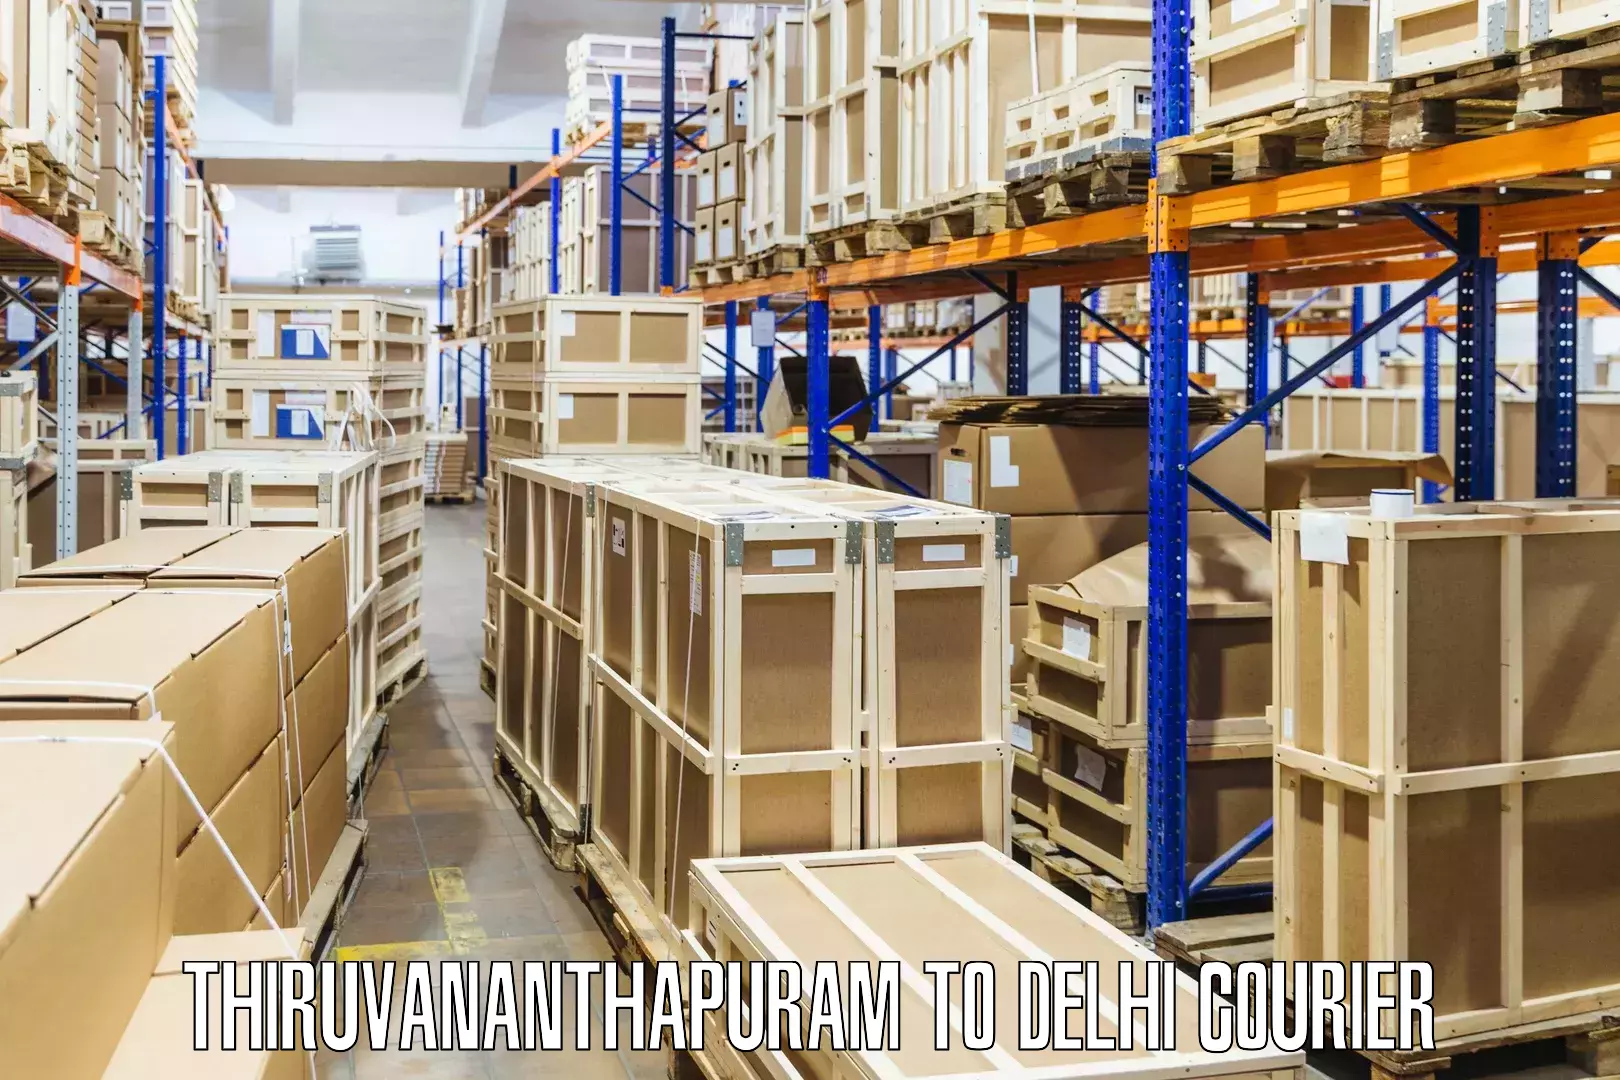 Courier service partnerships Thiruvananthapuram to Subhash Nagar